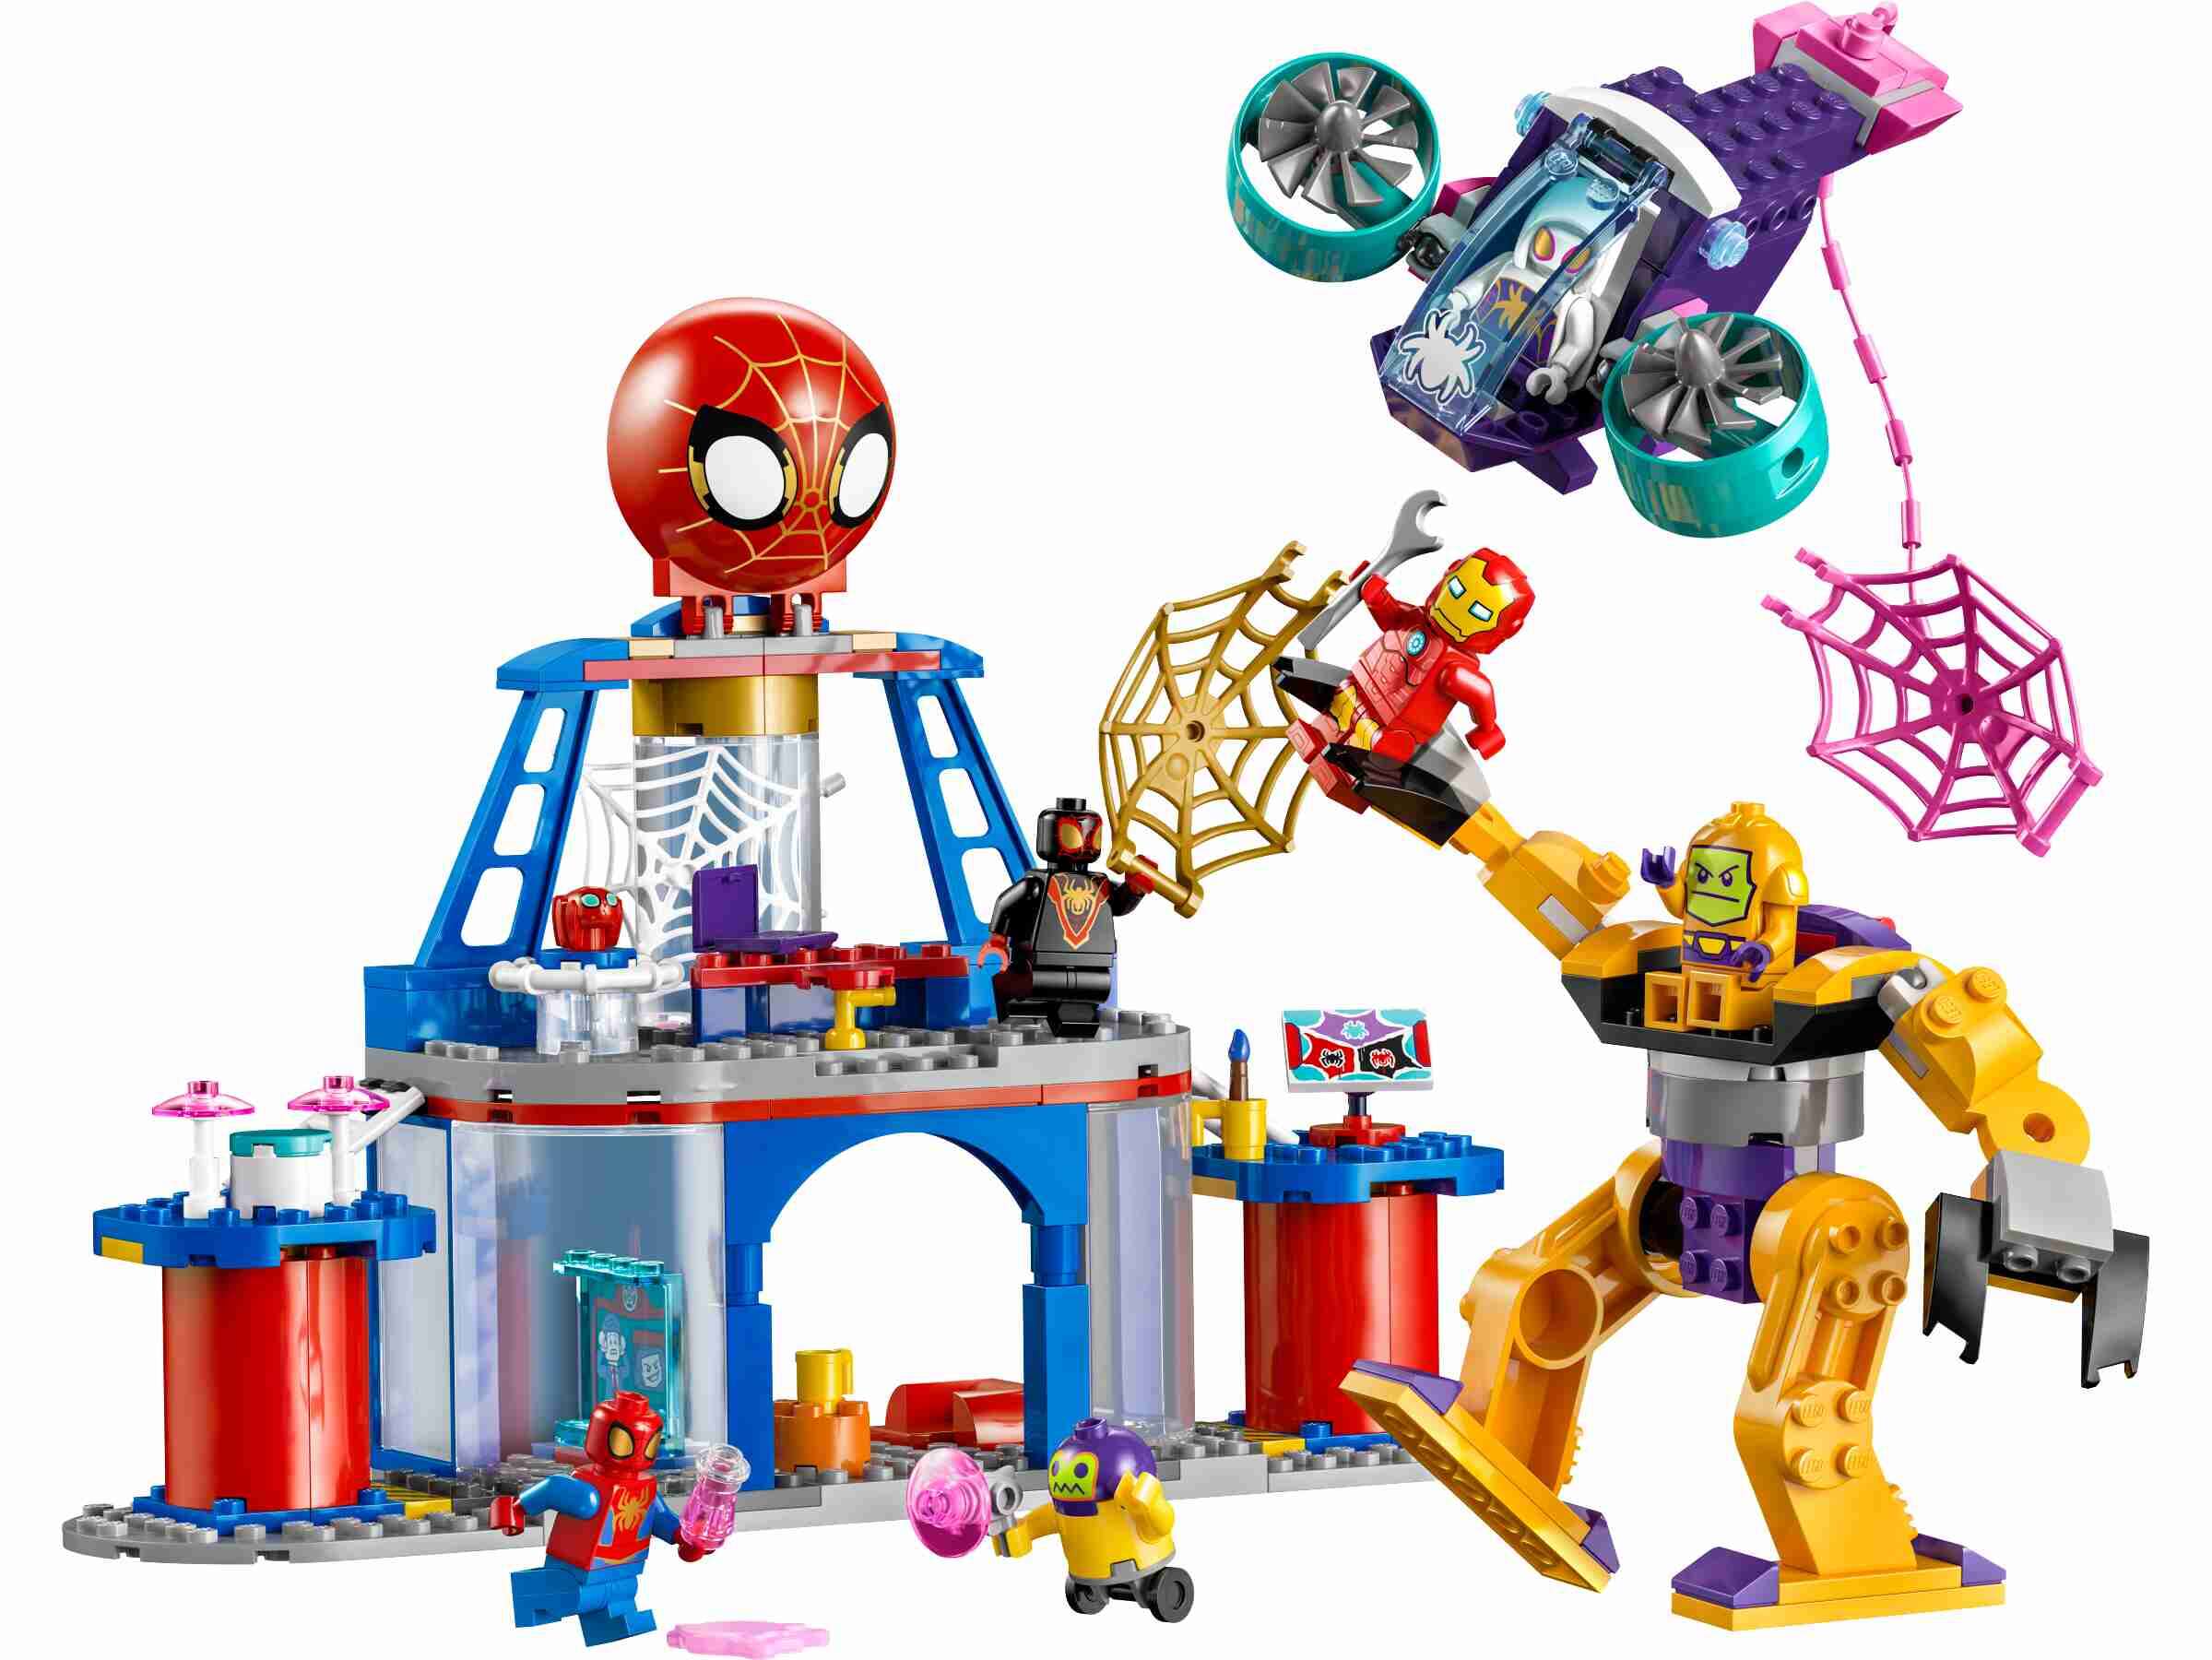 LEGO 10794 Marvel Das Hauptquartier von Spideys Team, 5 Minifiguren